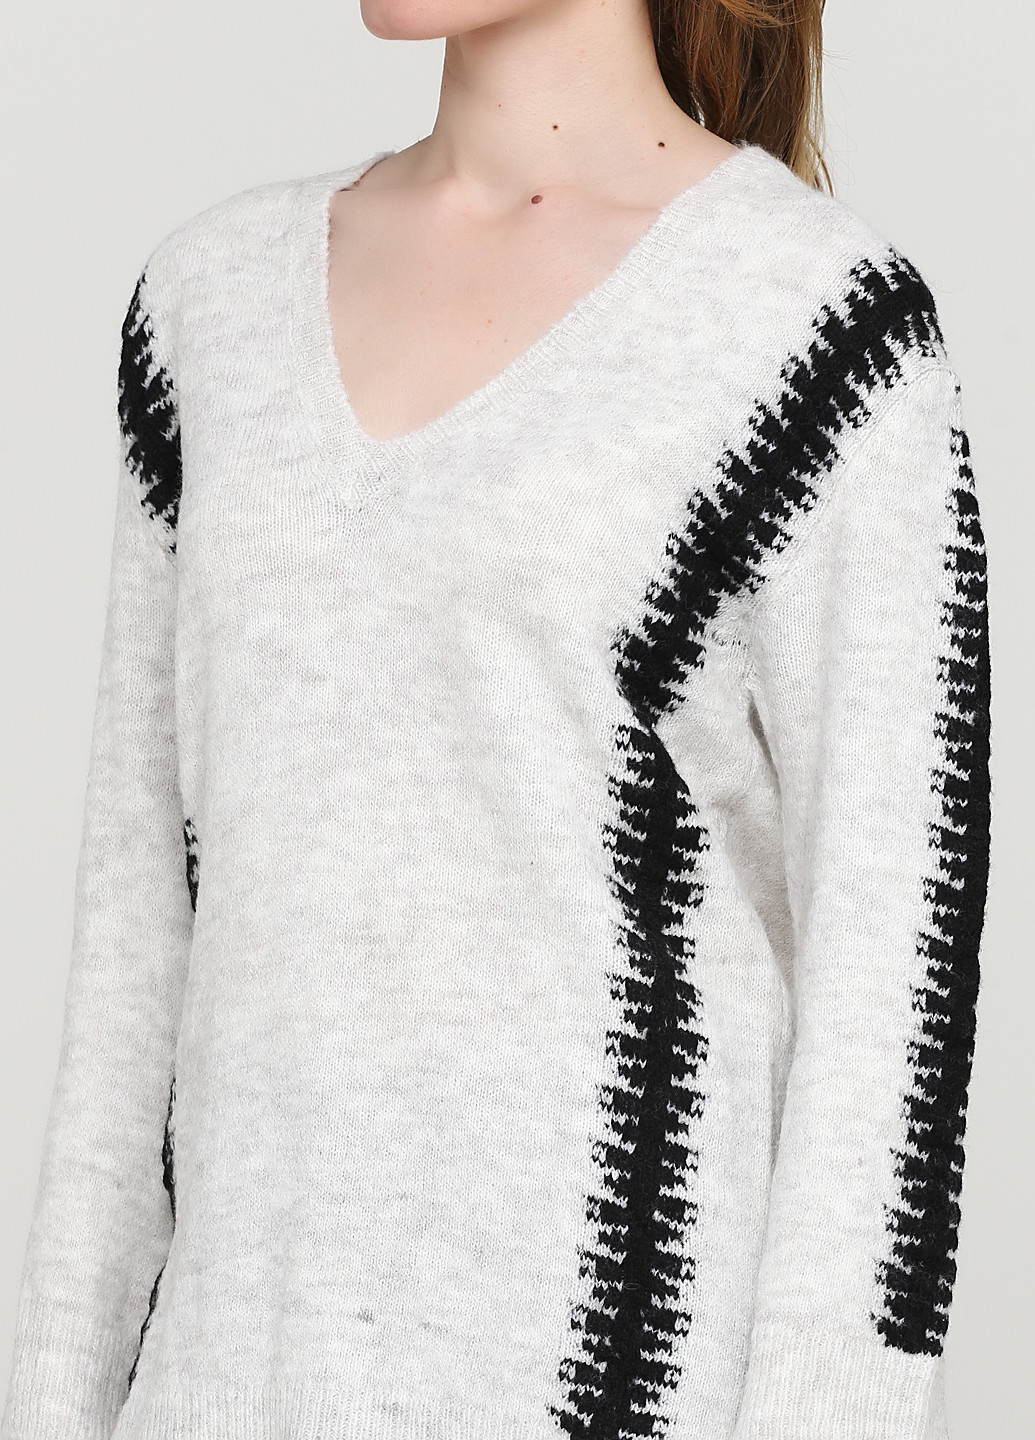 Светло-серый зимний пуловер пуловер Lauren Vidal